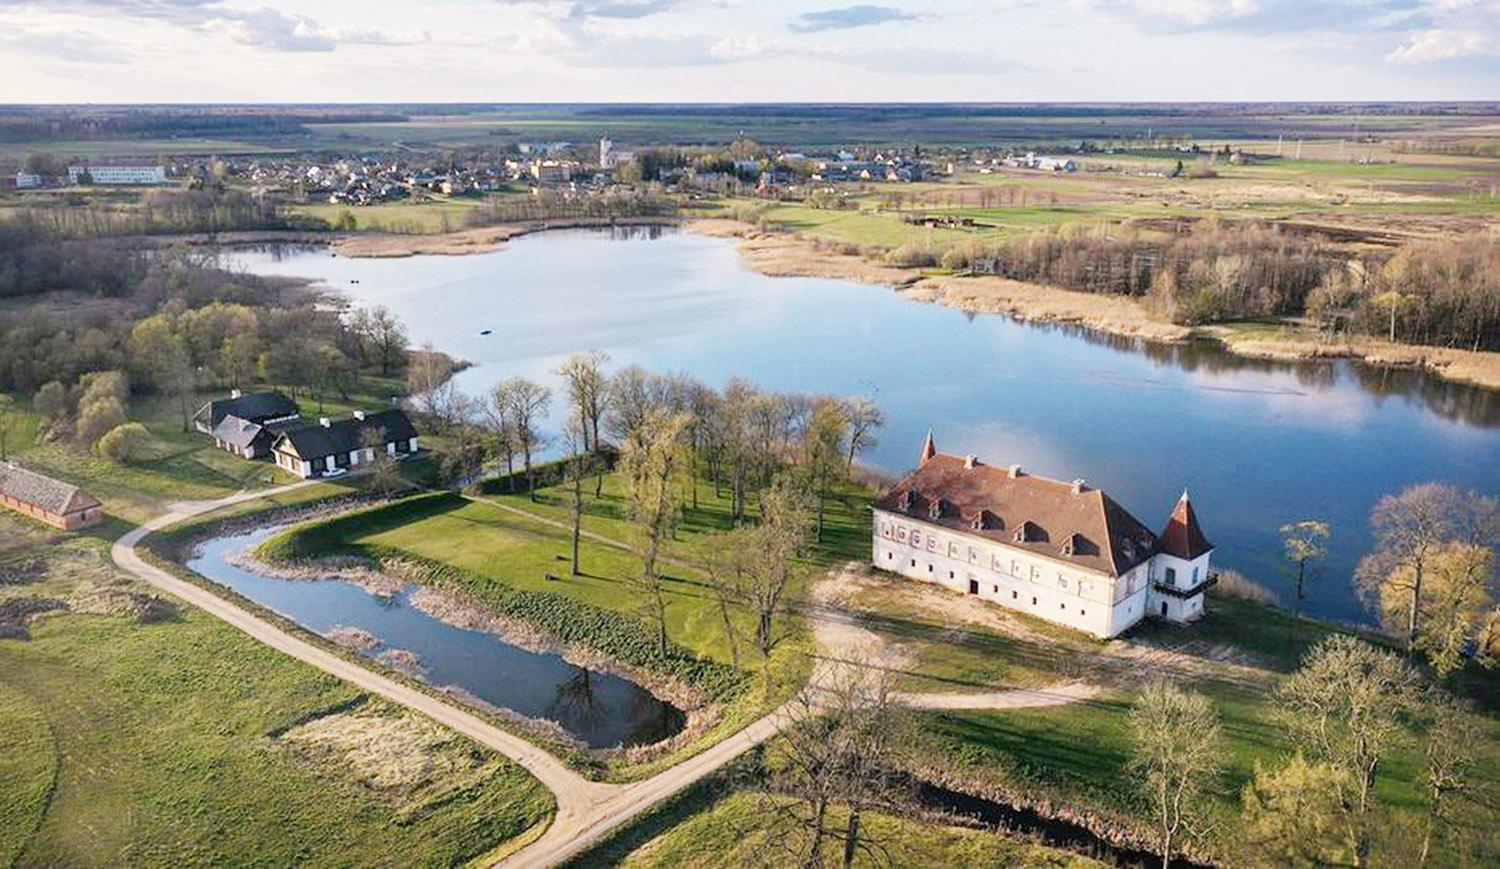 Siesikų pilis – romano vertas Renesanso statinys / Siesikų pilis – vienas ankstyviausių ir mistiškiausių Renesanso statinių Lietuvoje.  Dainiaus Vyto nuotr.